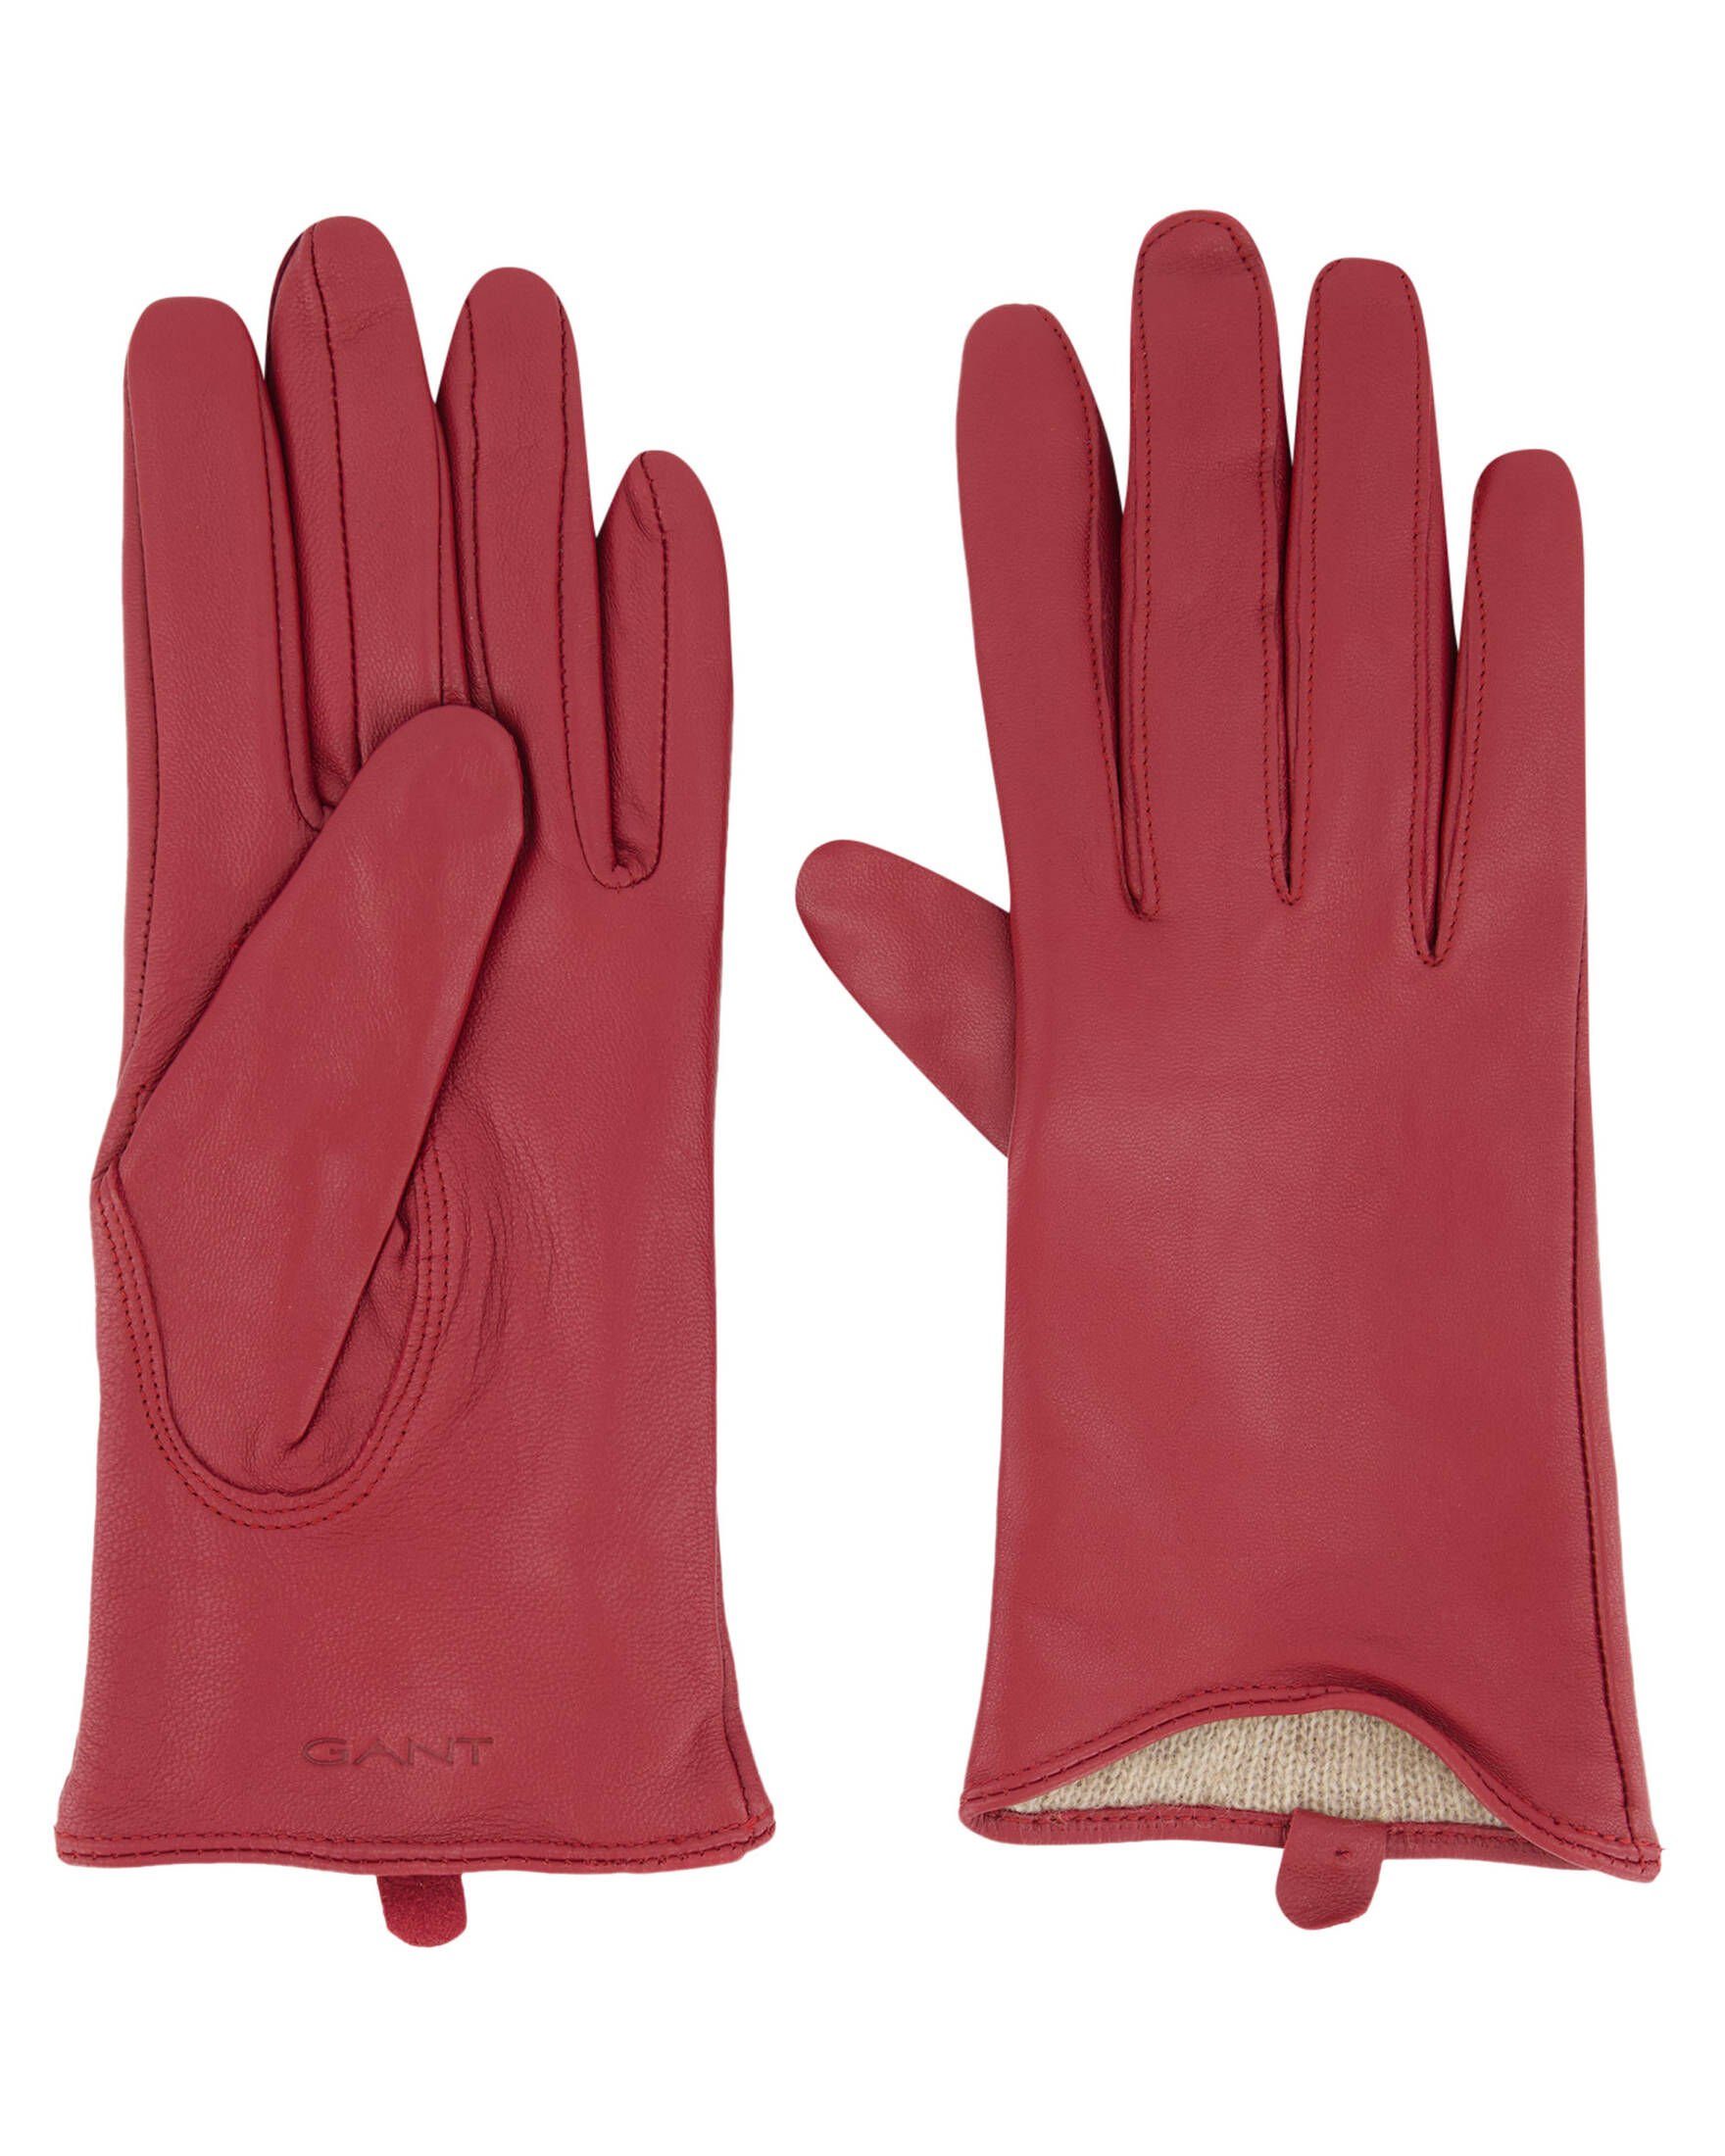 Gant Lederhandschuhe (74) rot Lammleder Damen Lederhandschuhe aus